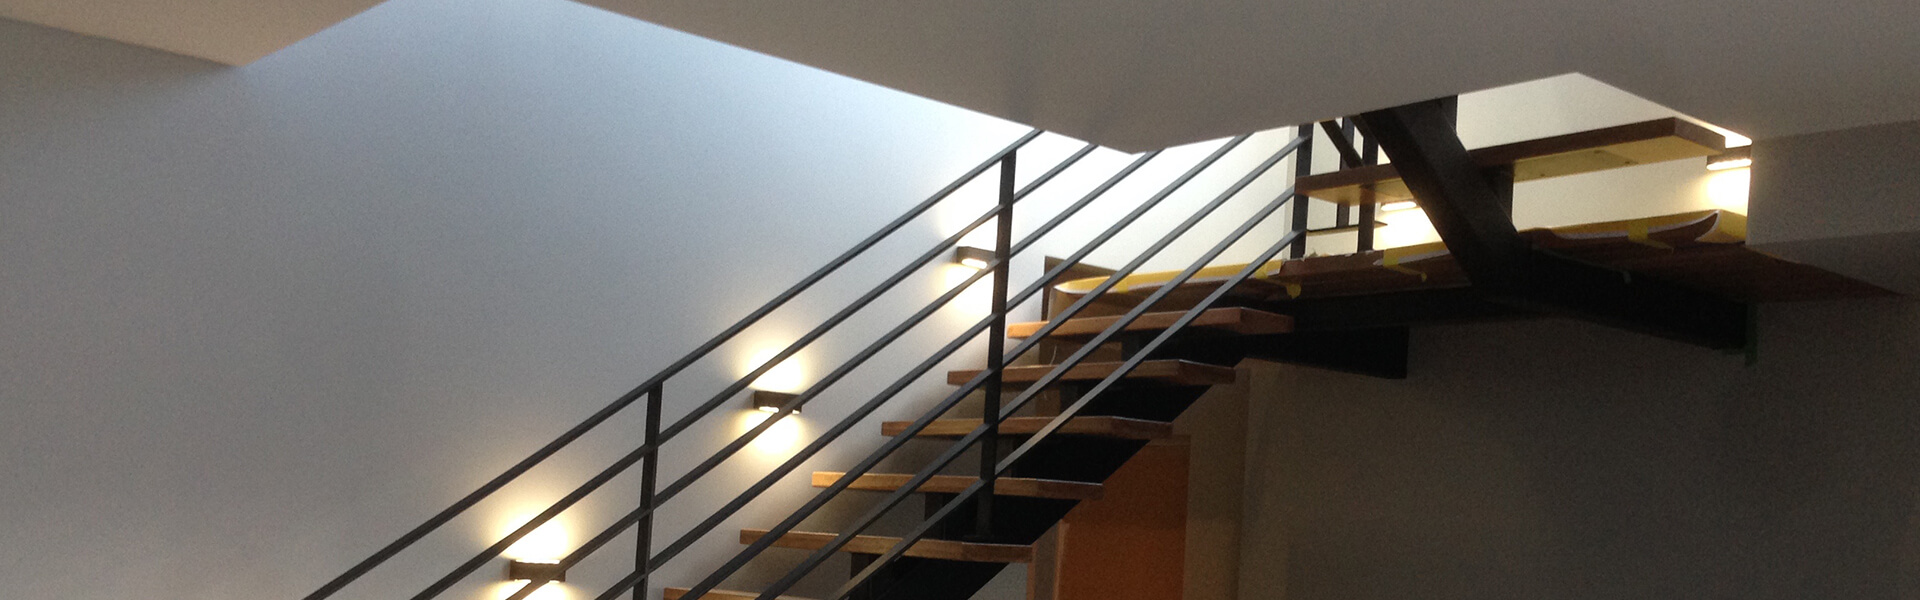 schody metalowe zabiegowe wewnętrzne z podestem oraz drewnianymi stopniami, wanga centralna